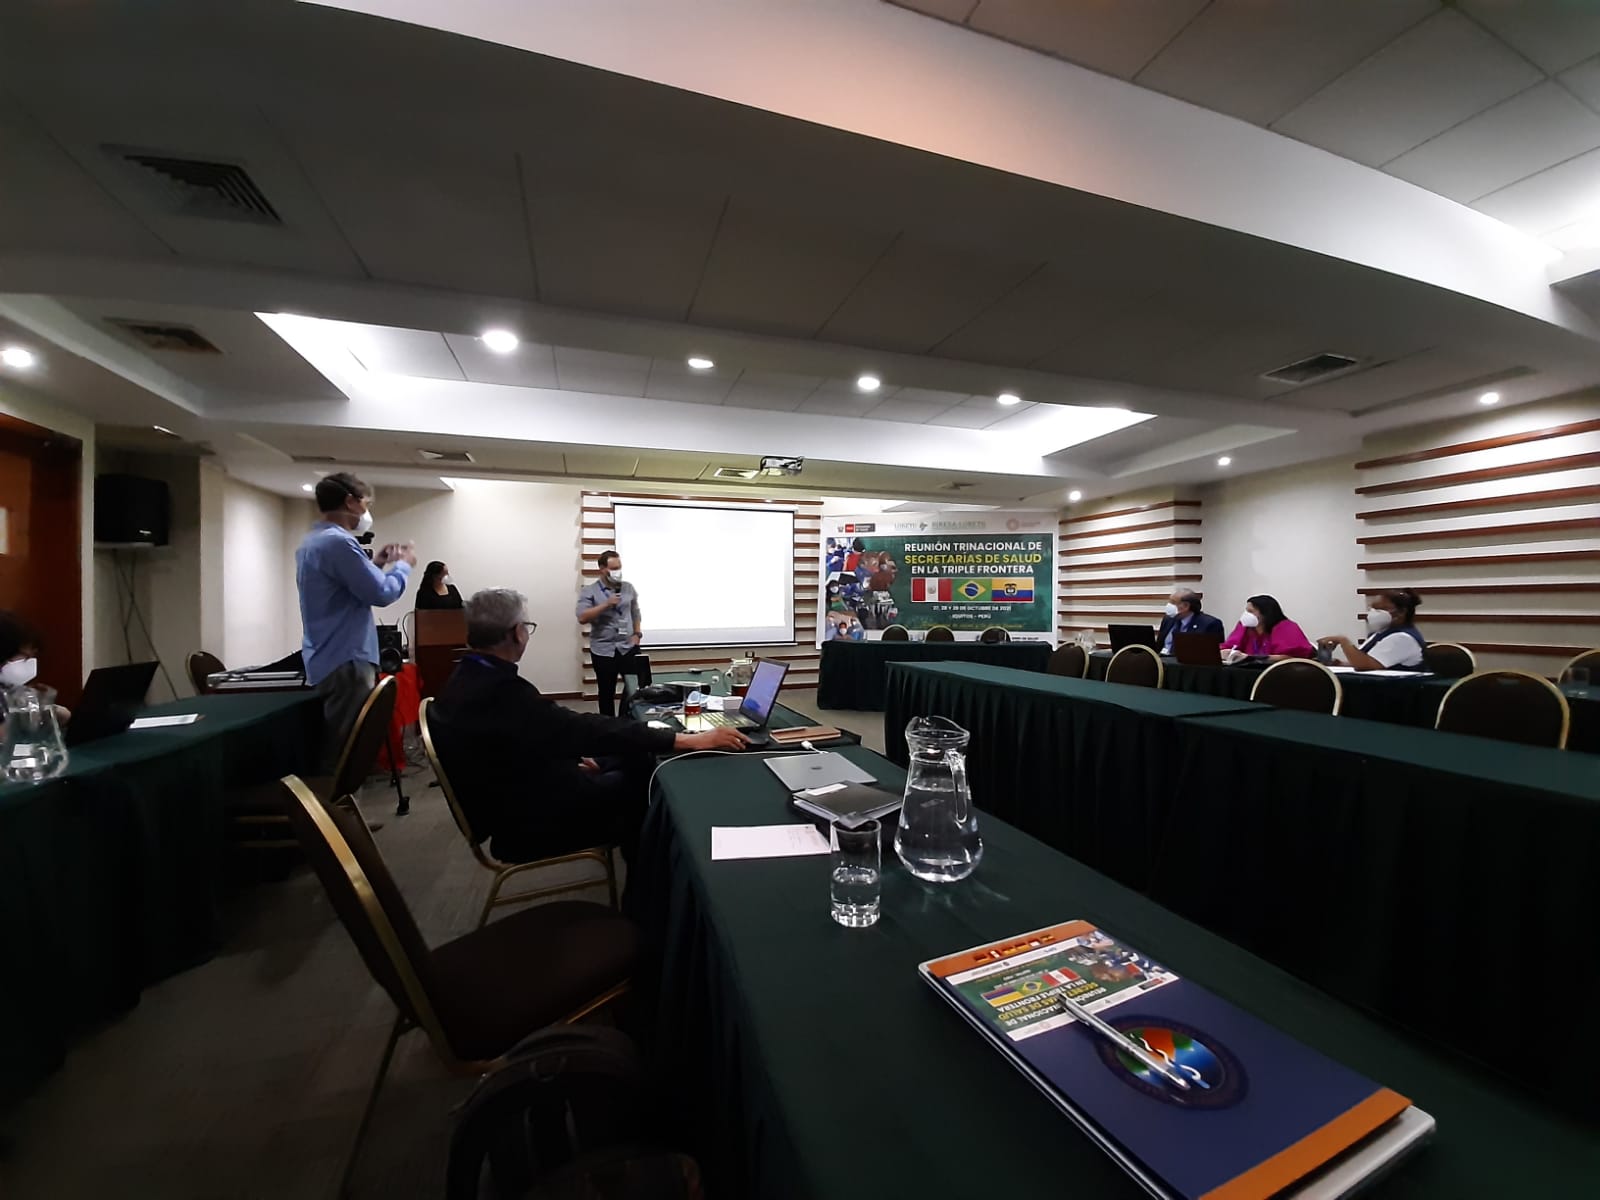 OTCA participa da Reunião Trinacional de Secretarias de Saúde sobre a Tríplice Fronteira-Peru, Brasil e Colômbia